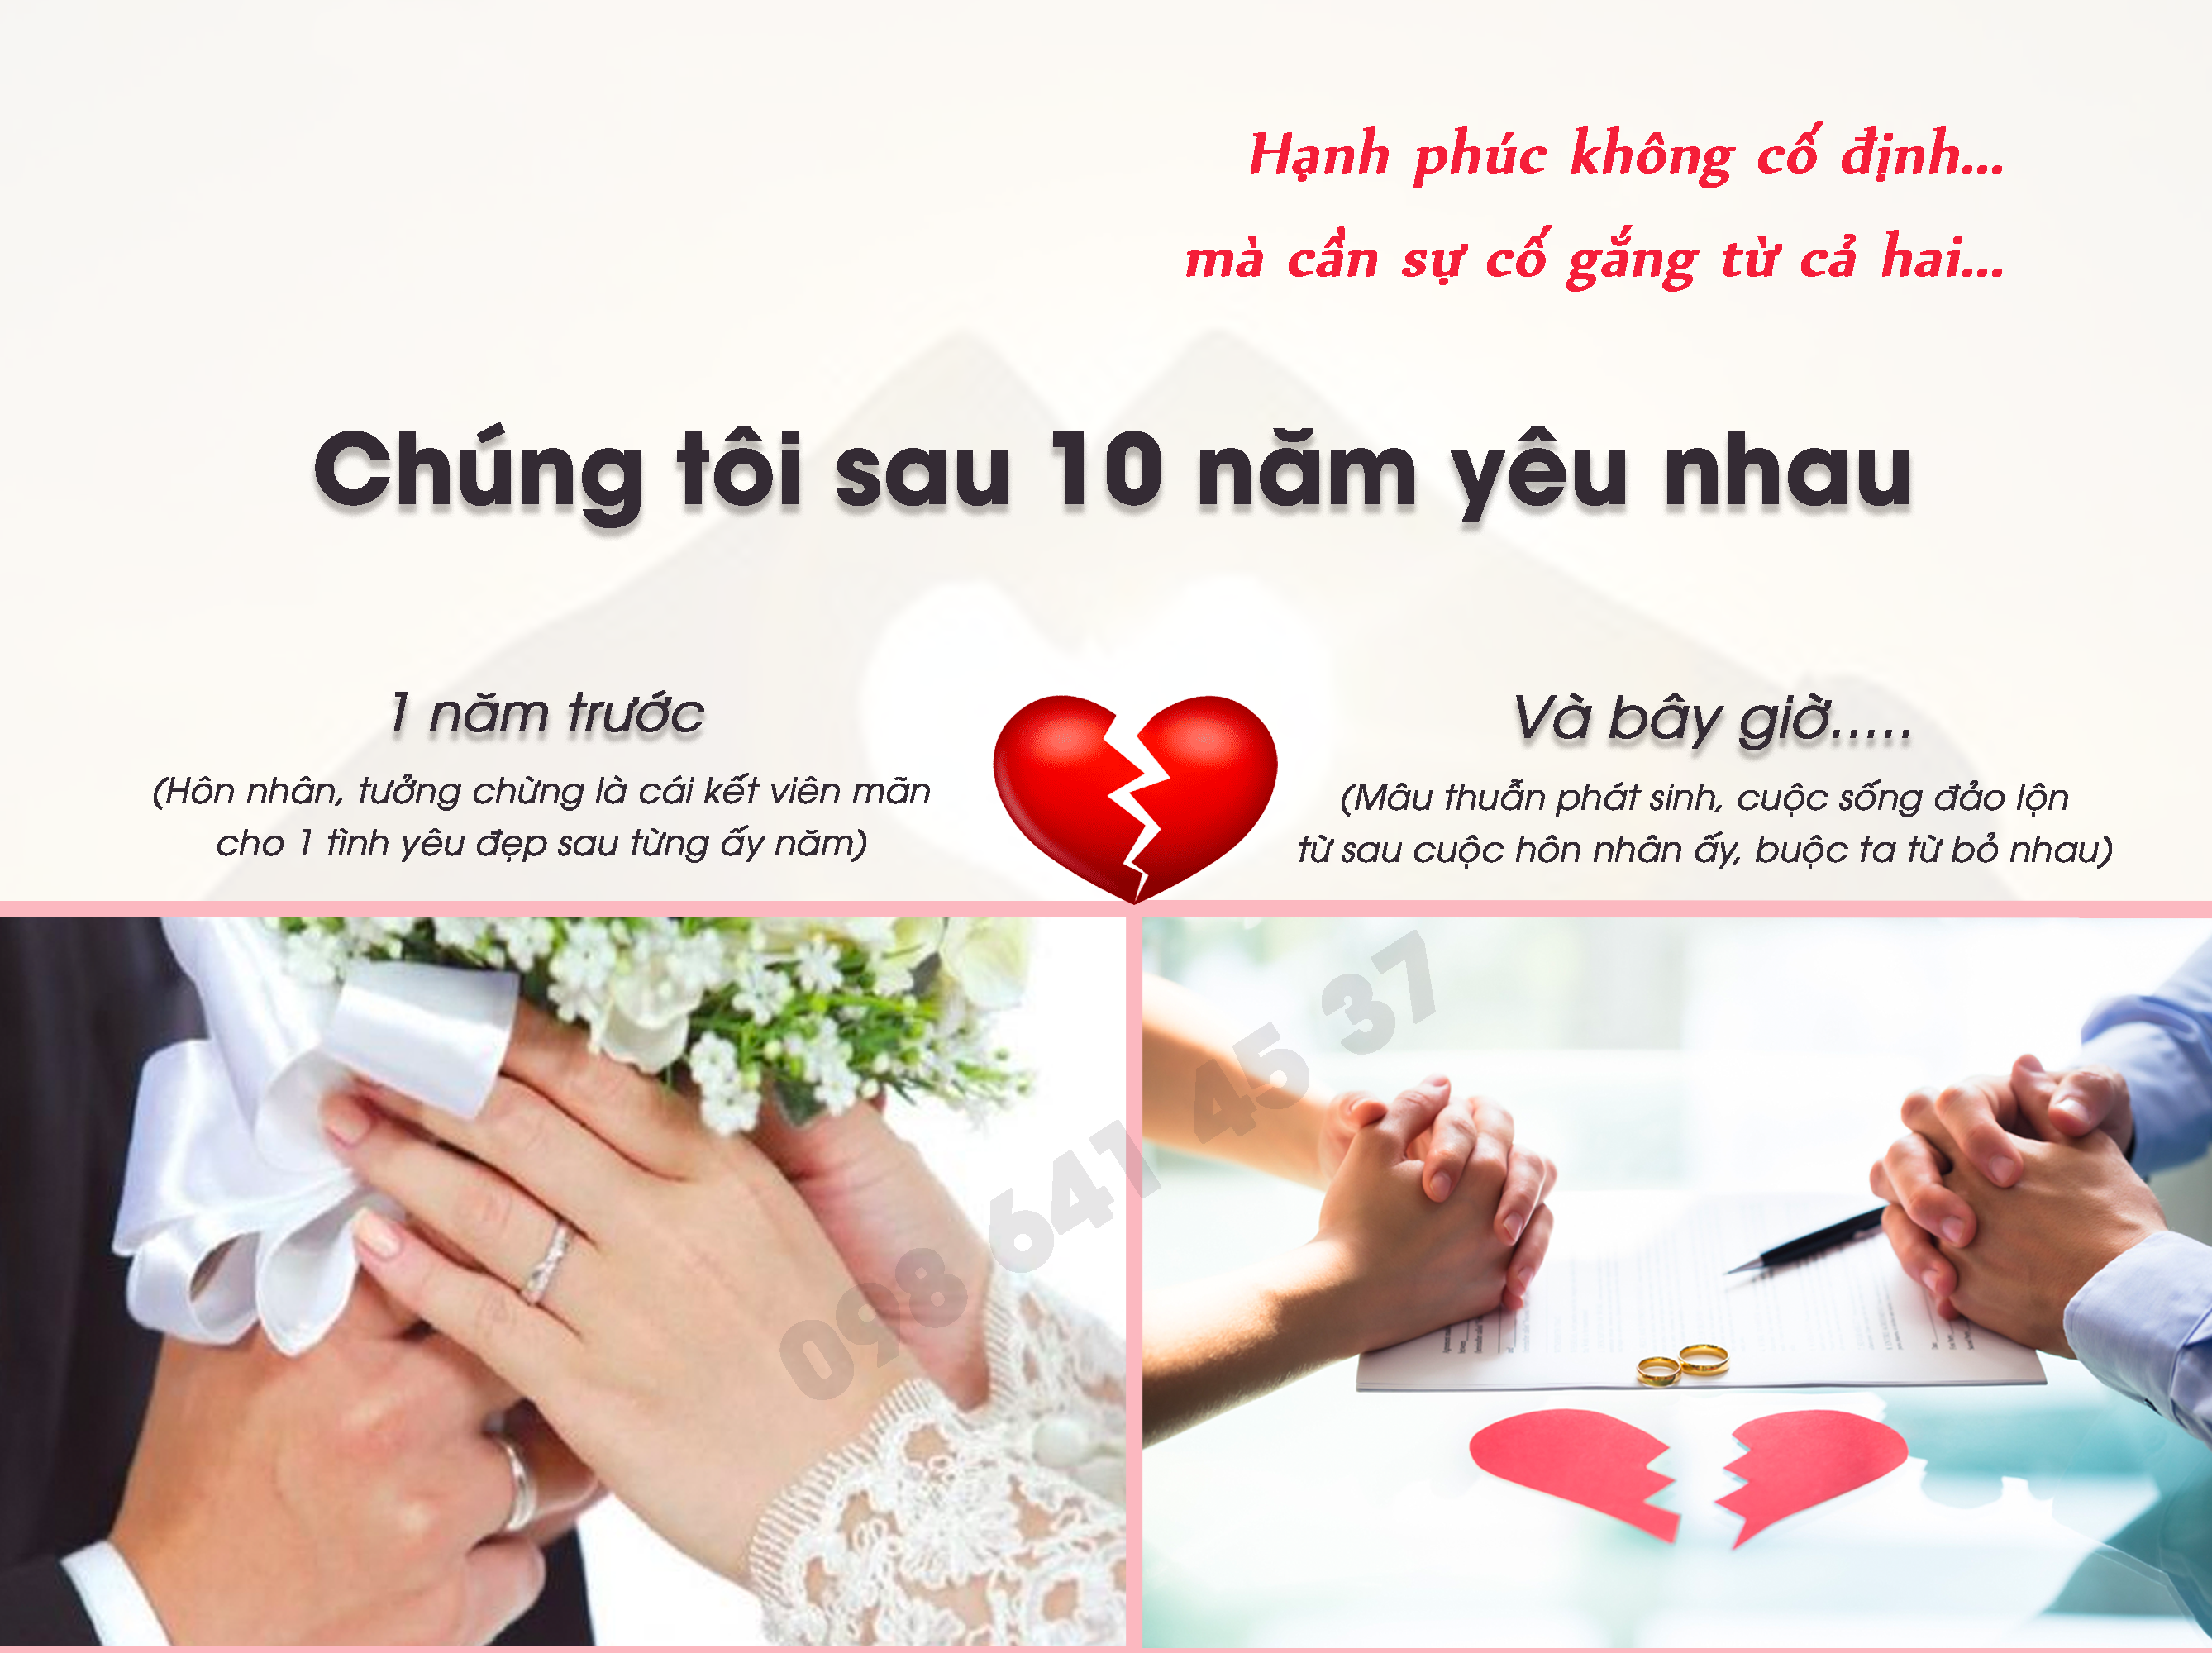 Thiệp cưới Hồng Ngân sẽ làm cho ngày cưới của bạn thêm đặc biệt hơn với những thiết kế tinh tế và độc đáo. Bạn có thể tự tay thiết kế thiệp cưới dành riêng cho mình hoặc chọn từ những thiết kế sành điệu và trẻ trung.